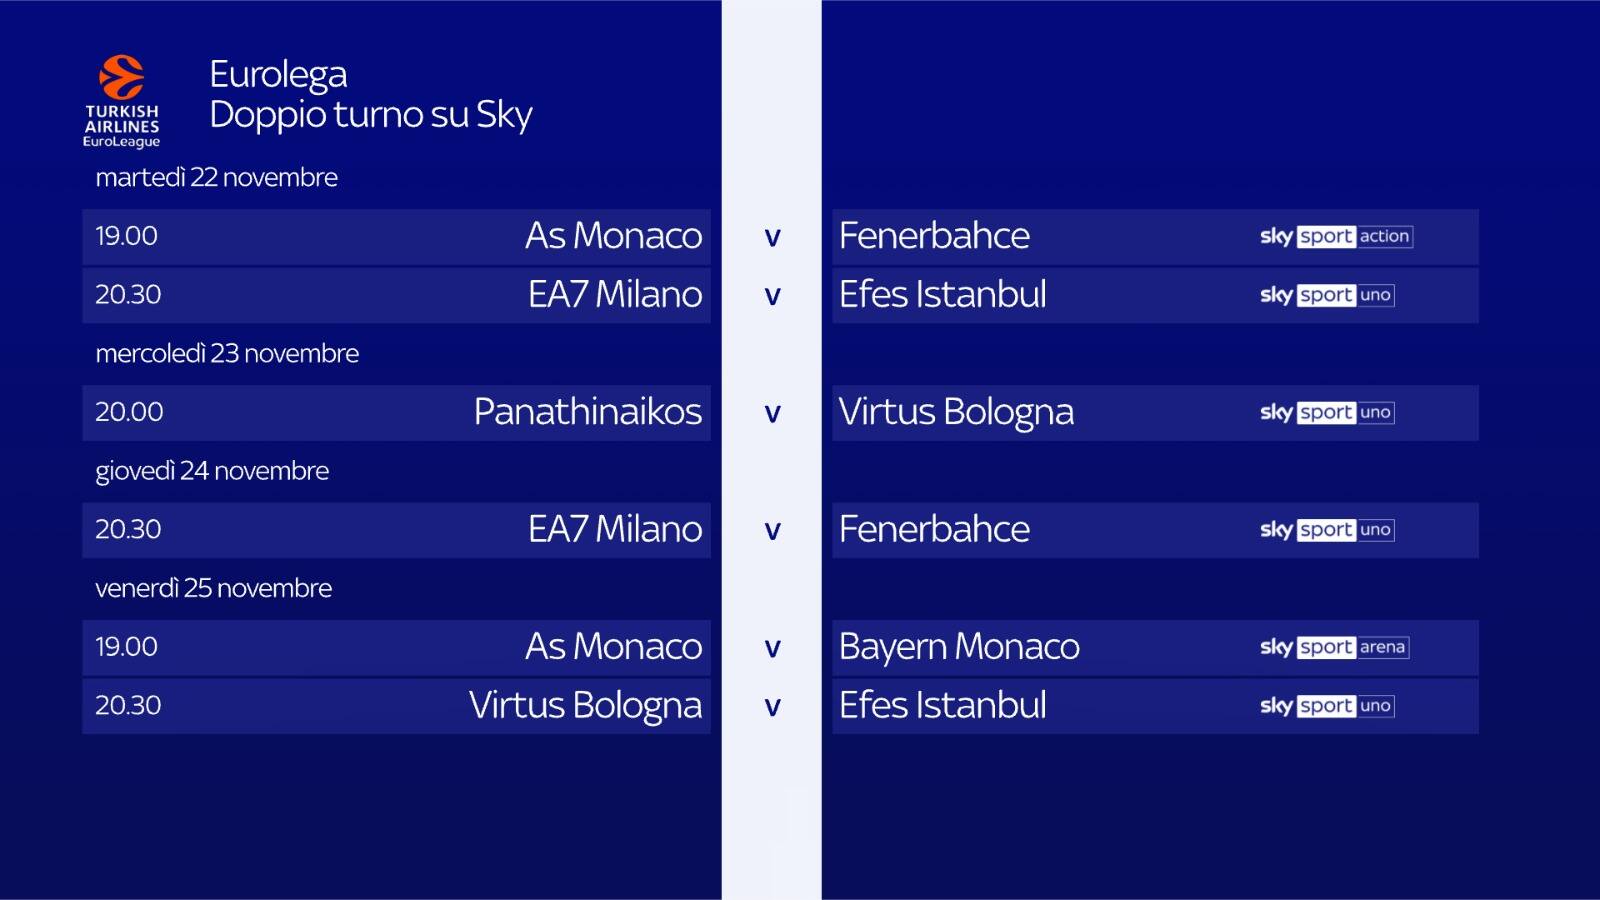 Le partite della settimana di Eurolega in onda su Sky